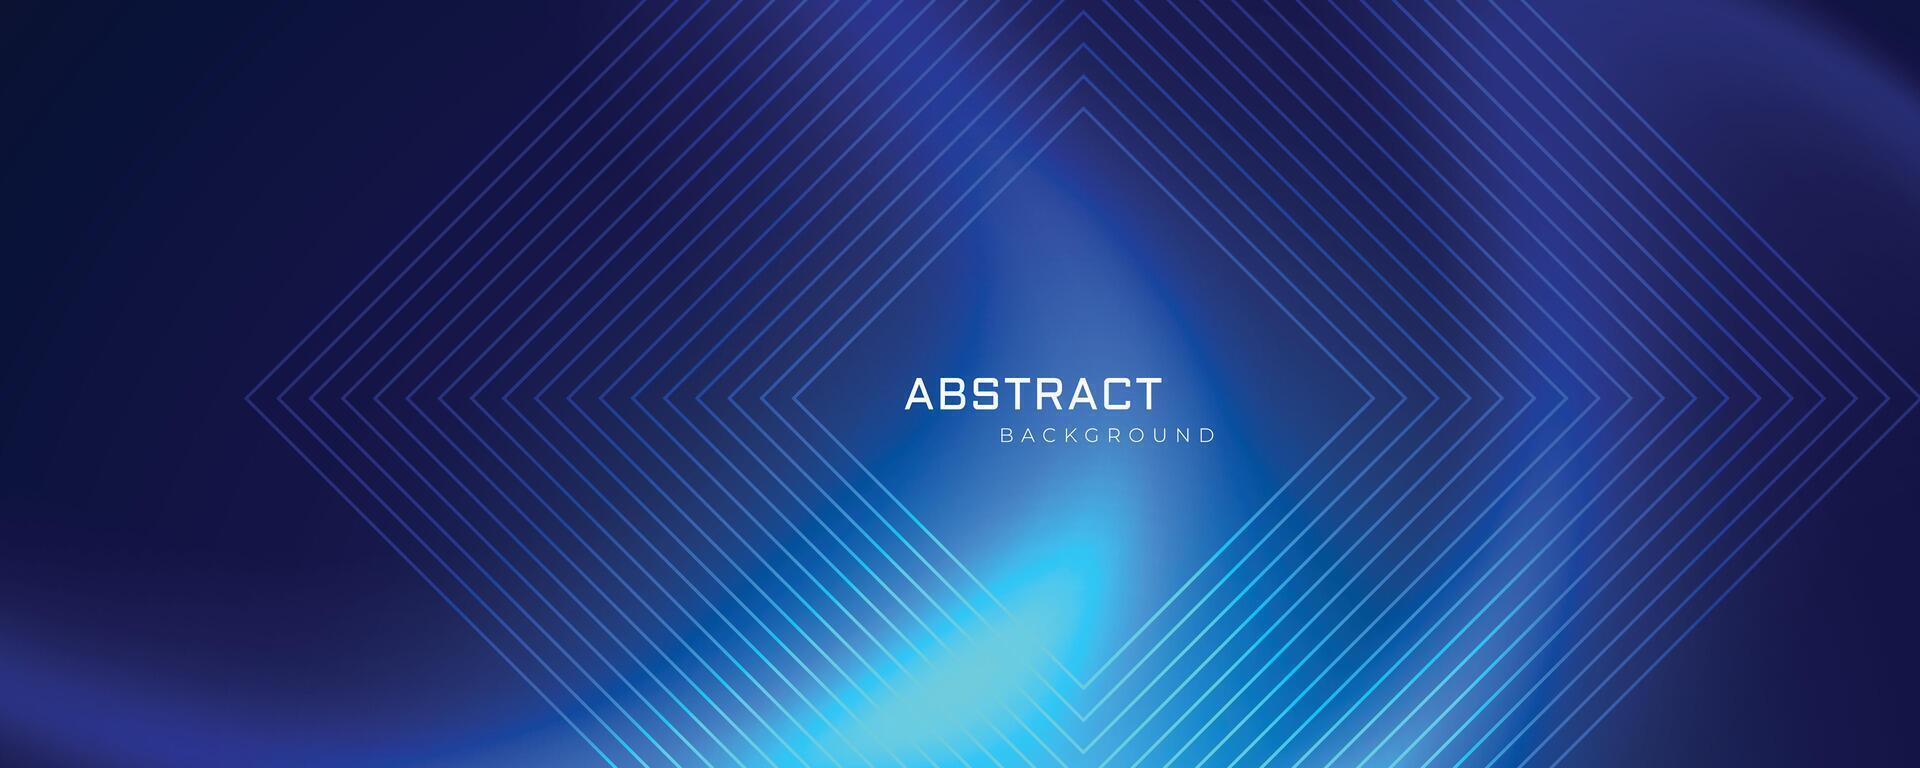 abstrakt teknologi blå maska och rader bakgrund vektor